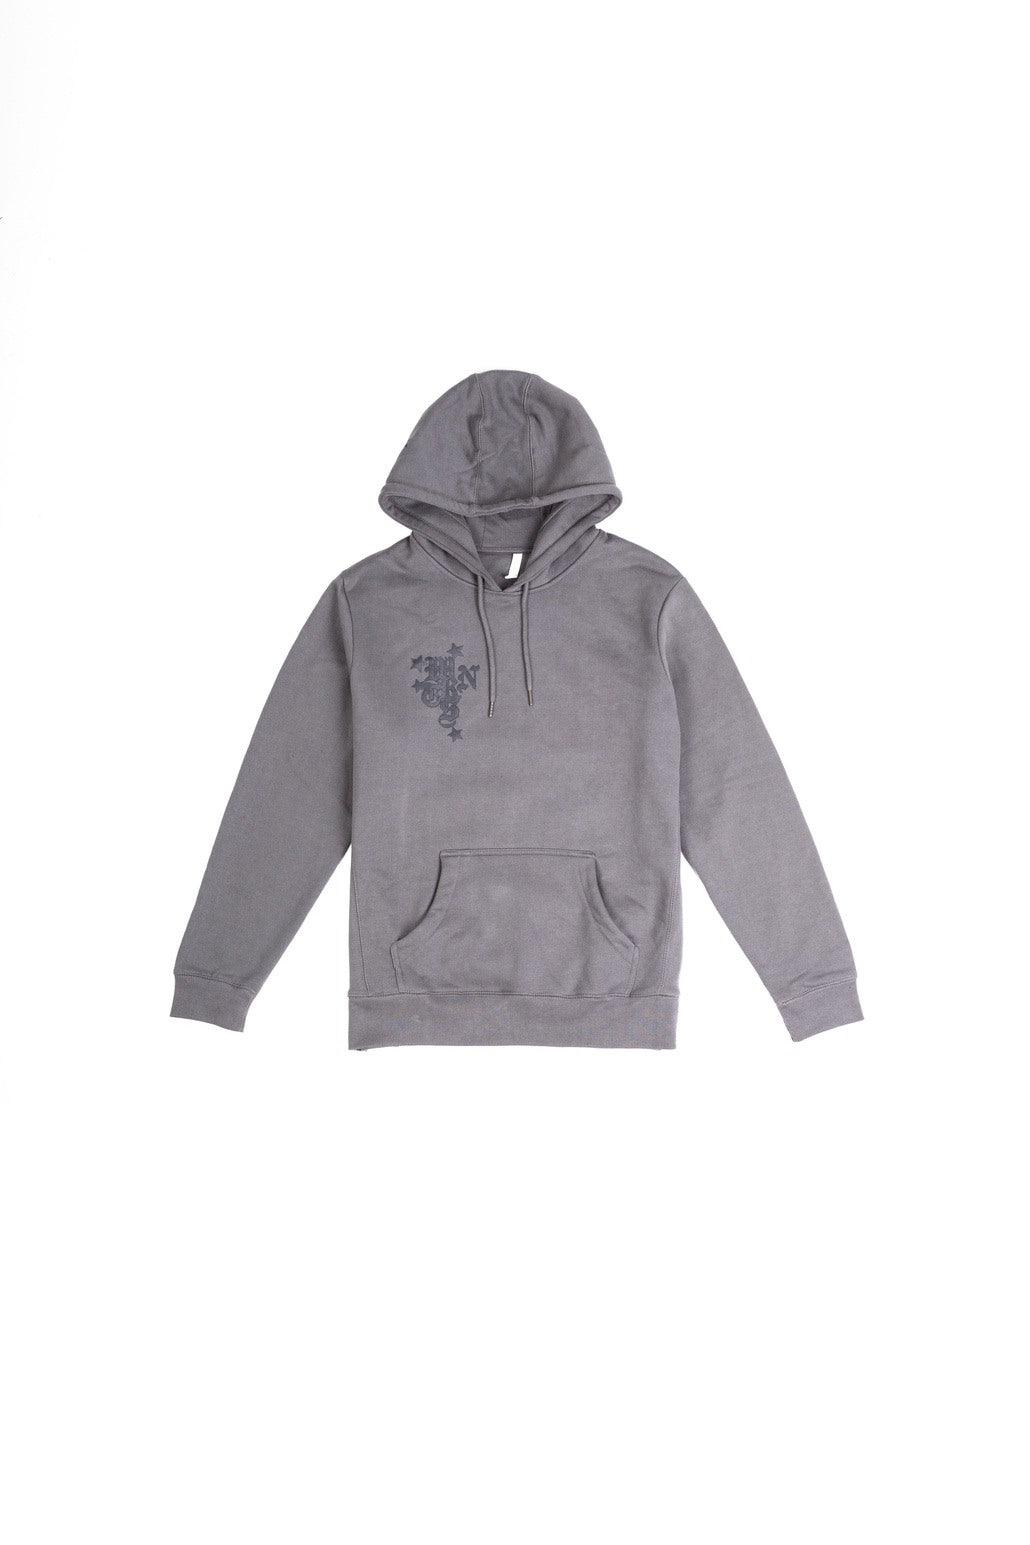 wrnts hoodie in grey